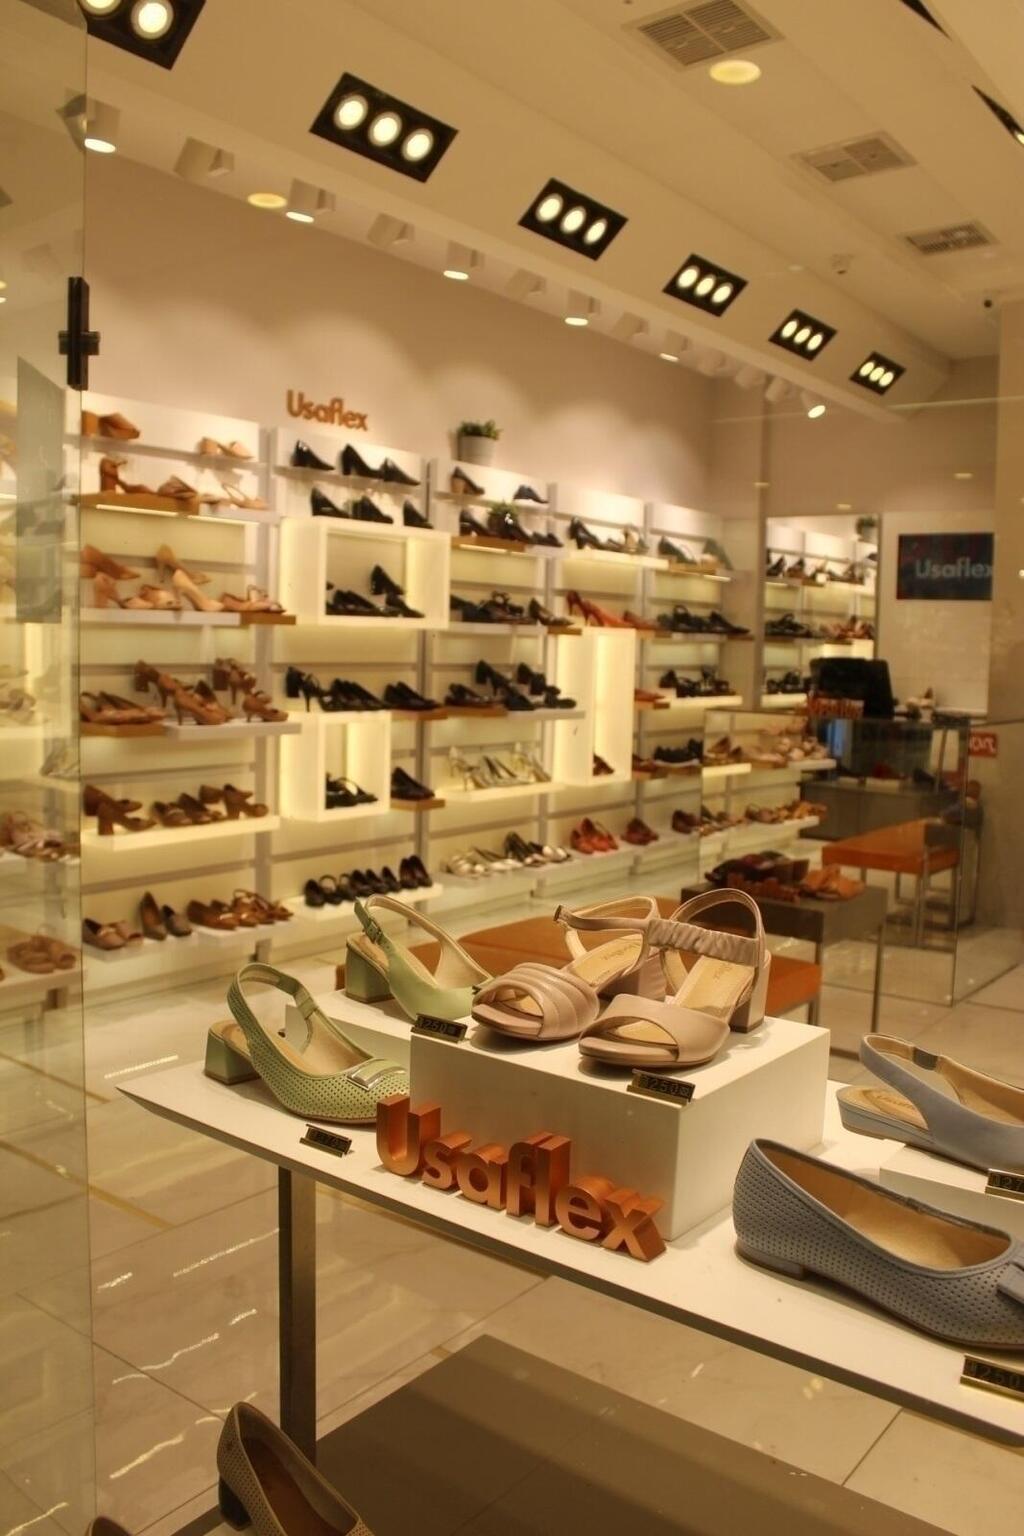 אוזפלקס - הקולקציה המיוחדת שבחנות כוללת נעליים מכל הסוגים.